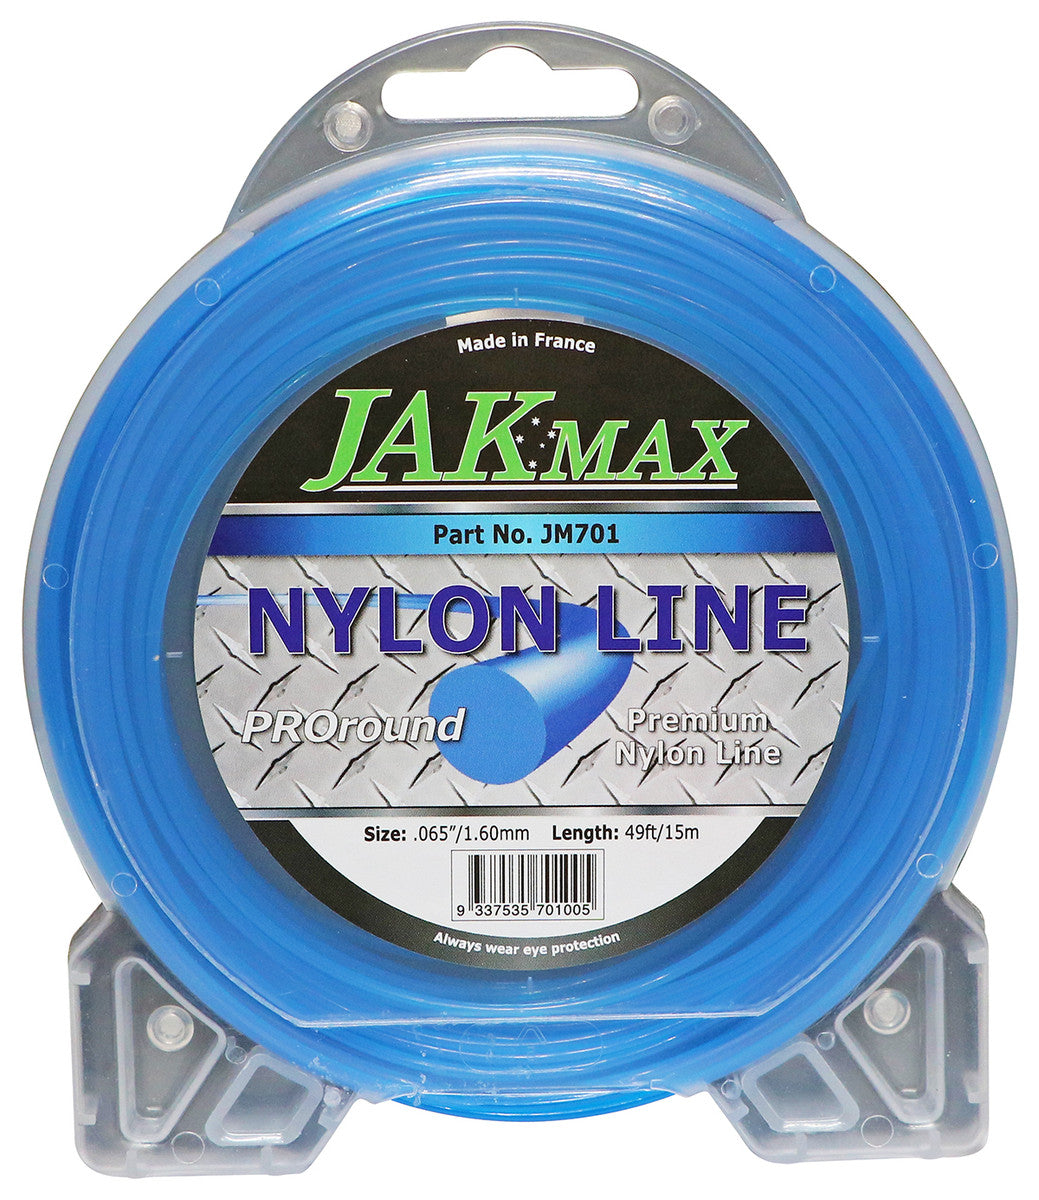 Pro-Round Nylon Line 2.00mm - 15 meters